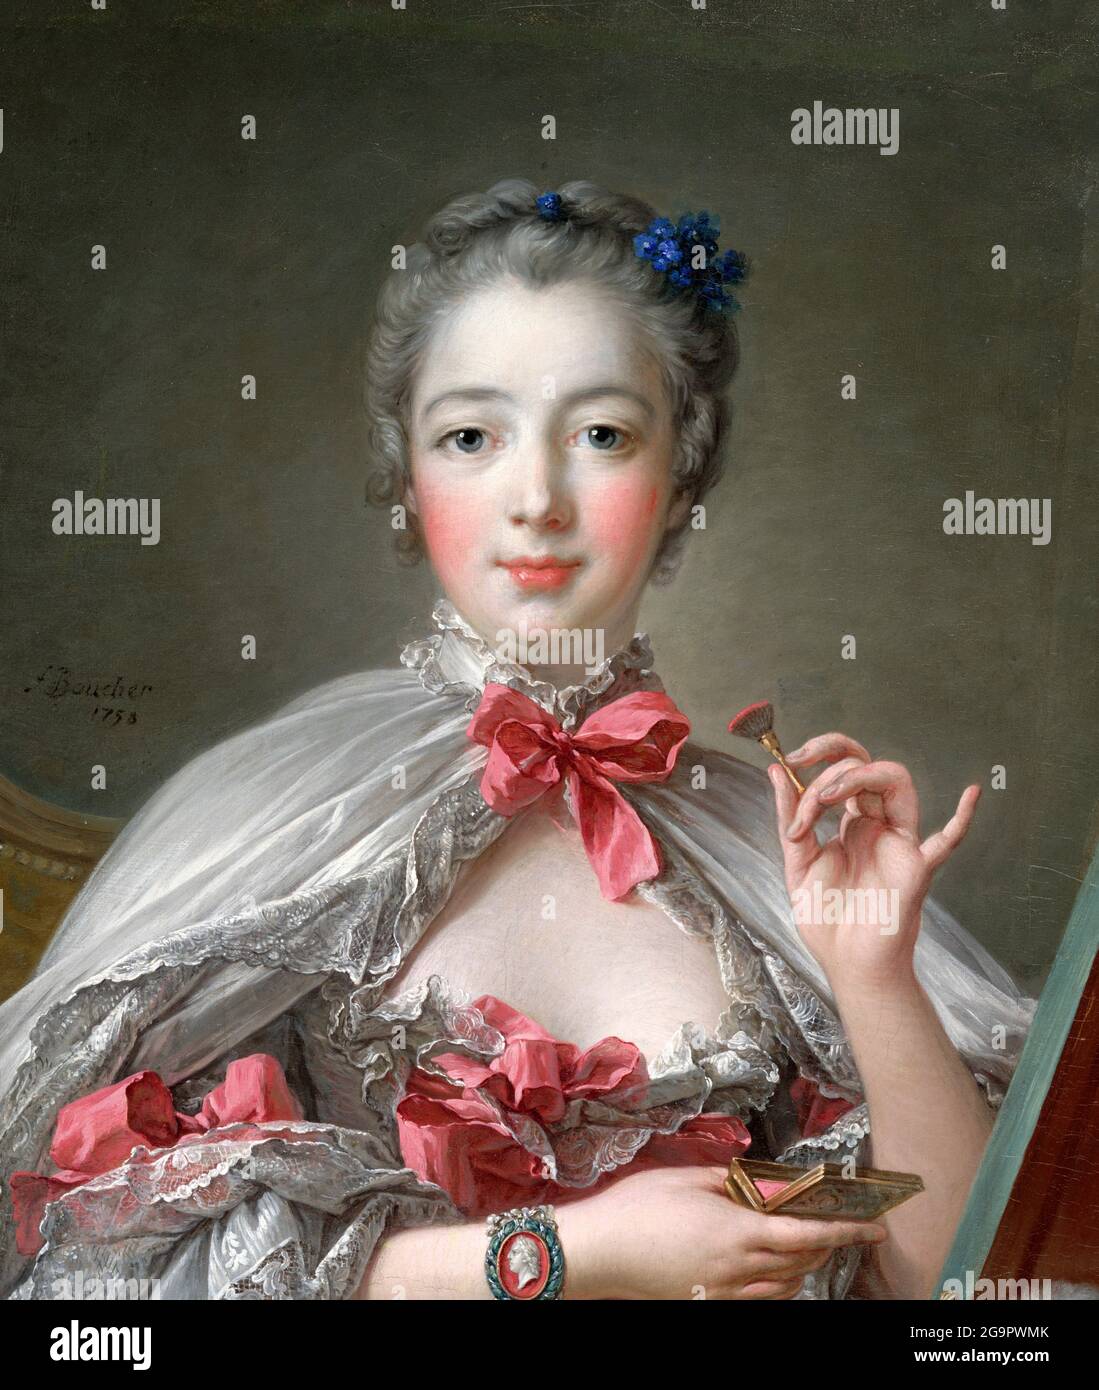 Madame de Pompadour. Porträt von Jeanne Antoinette Poisson, Marquise de Pompadour (1721-1764) von Francois Boucher, Öl auf Leinwand, 1750. Stockfoto